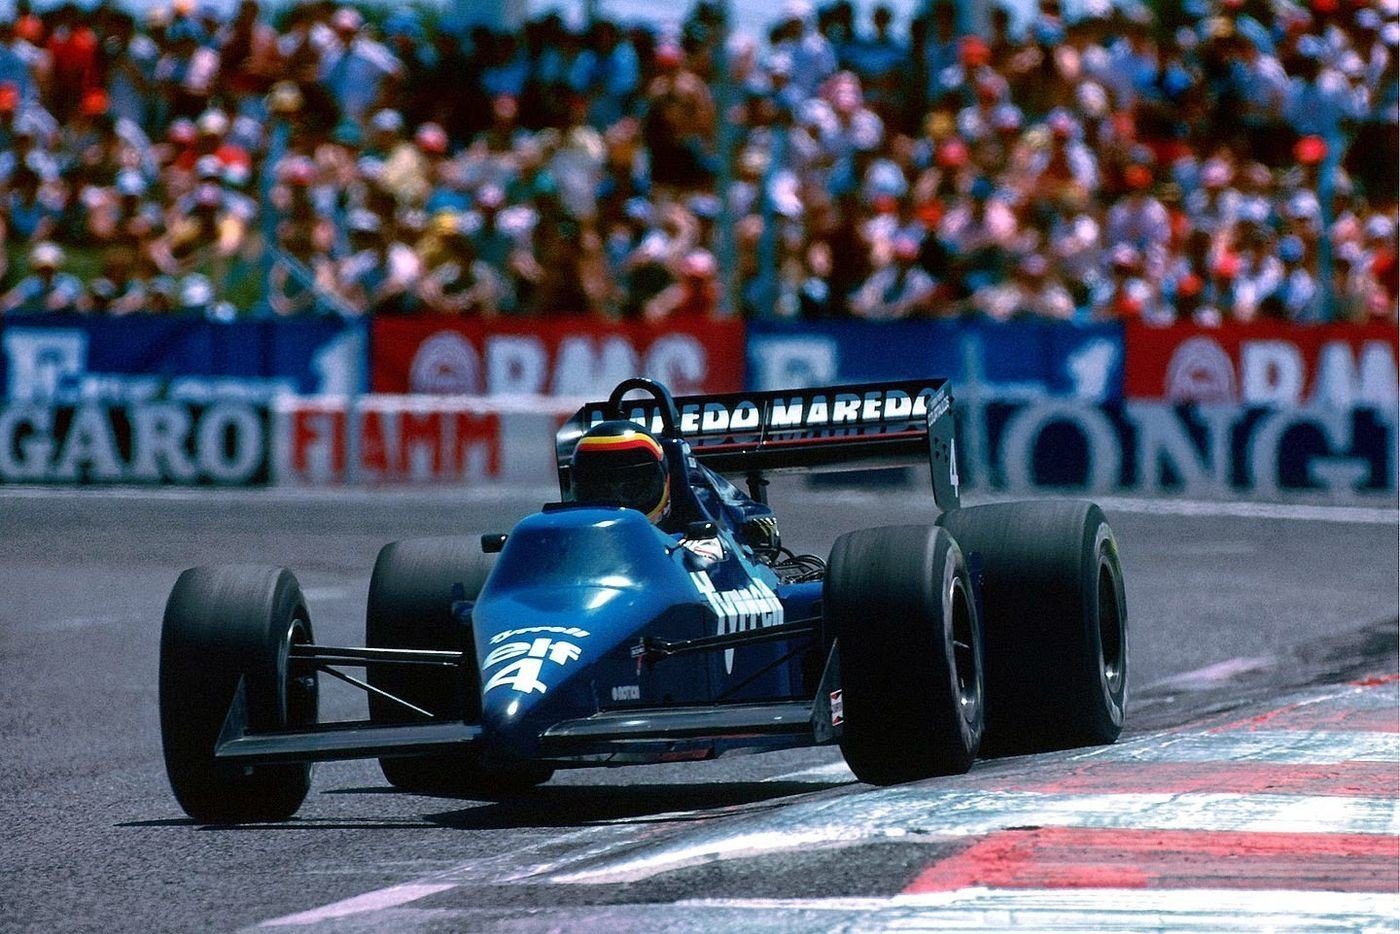 Grand Prix de France 1985